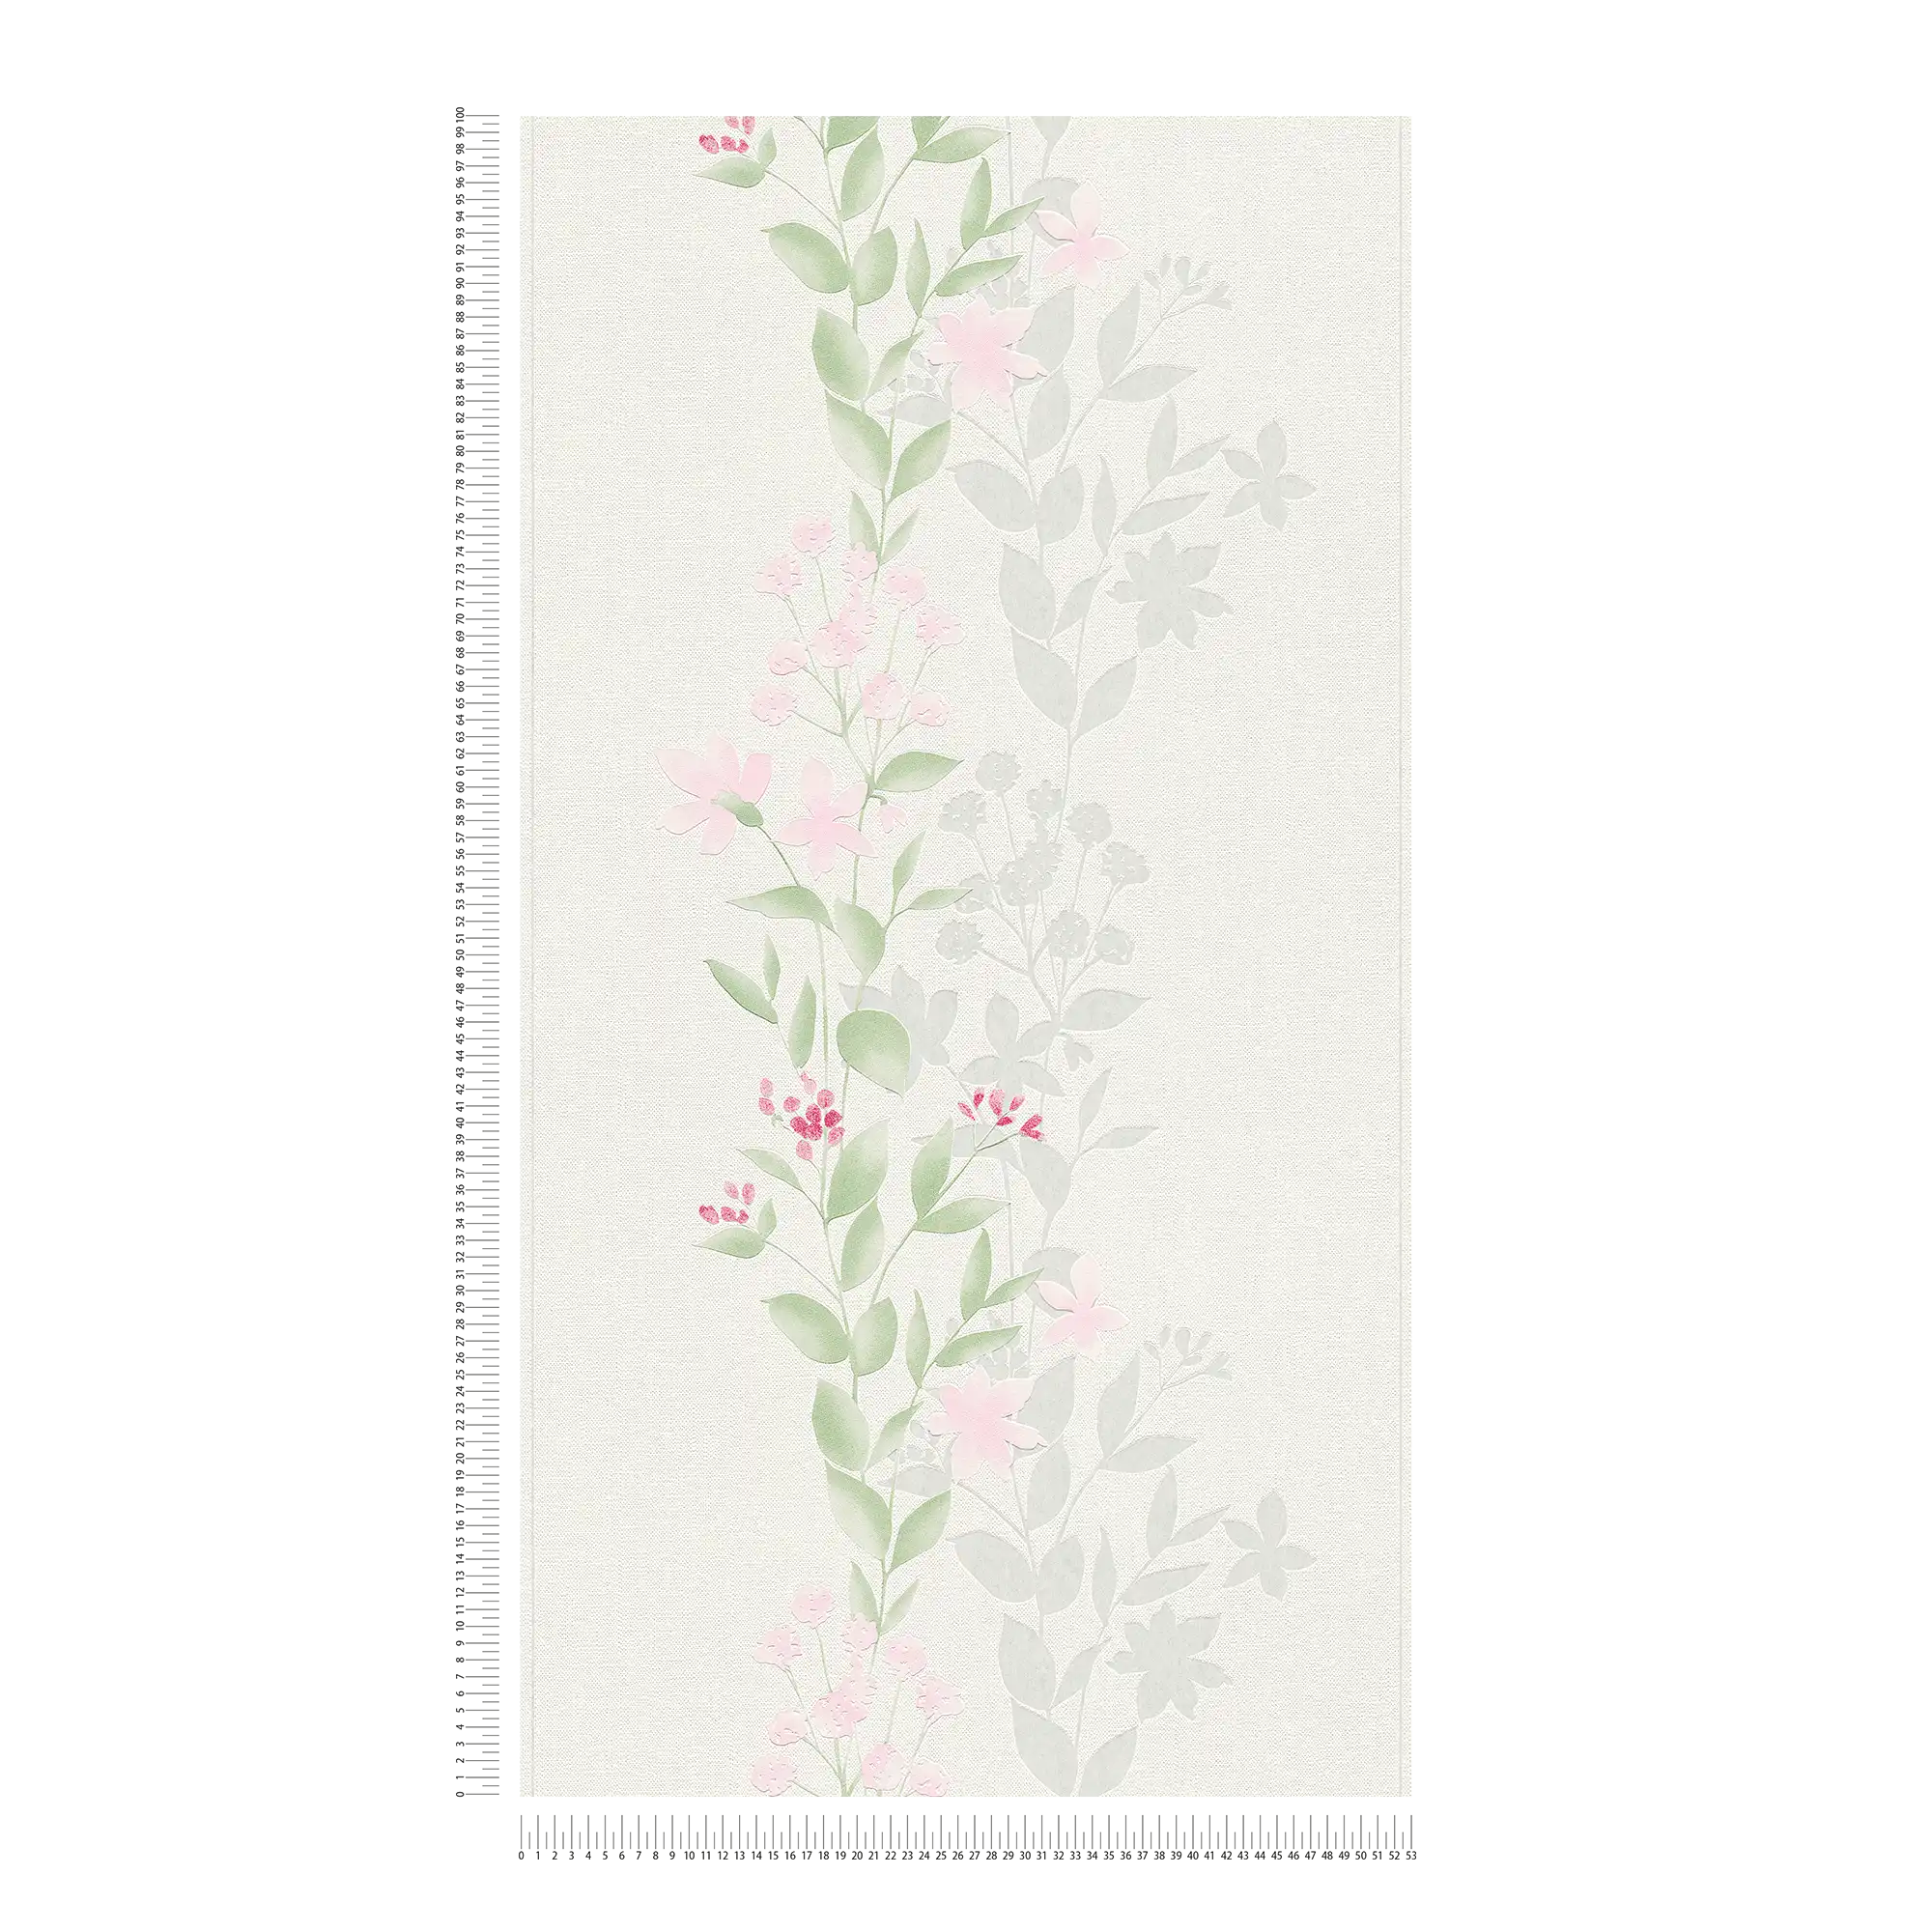             Papier peint Motif floral, effet aquarelle - gris, vert, rose
        